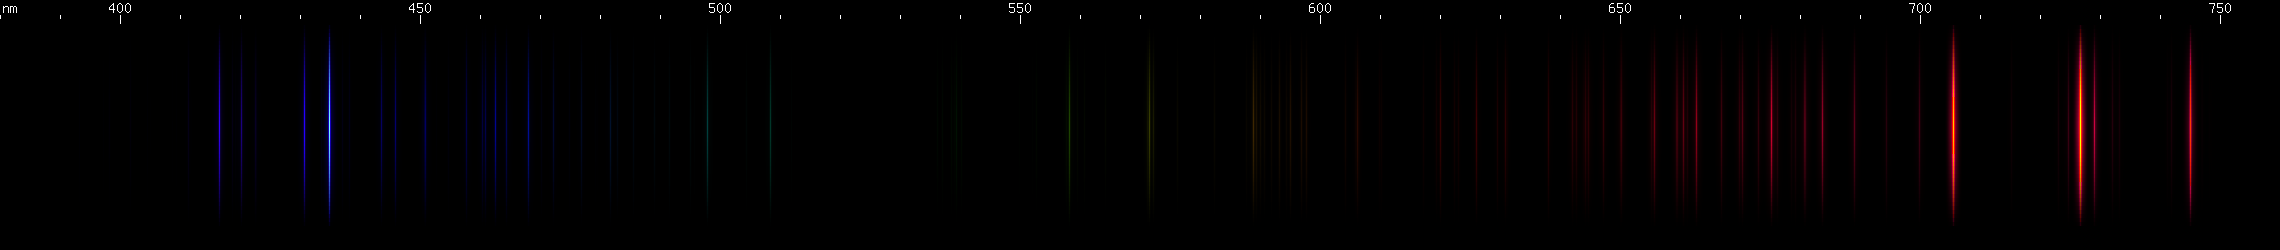 Spectral lines of Radon.